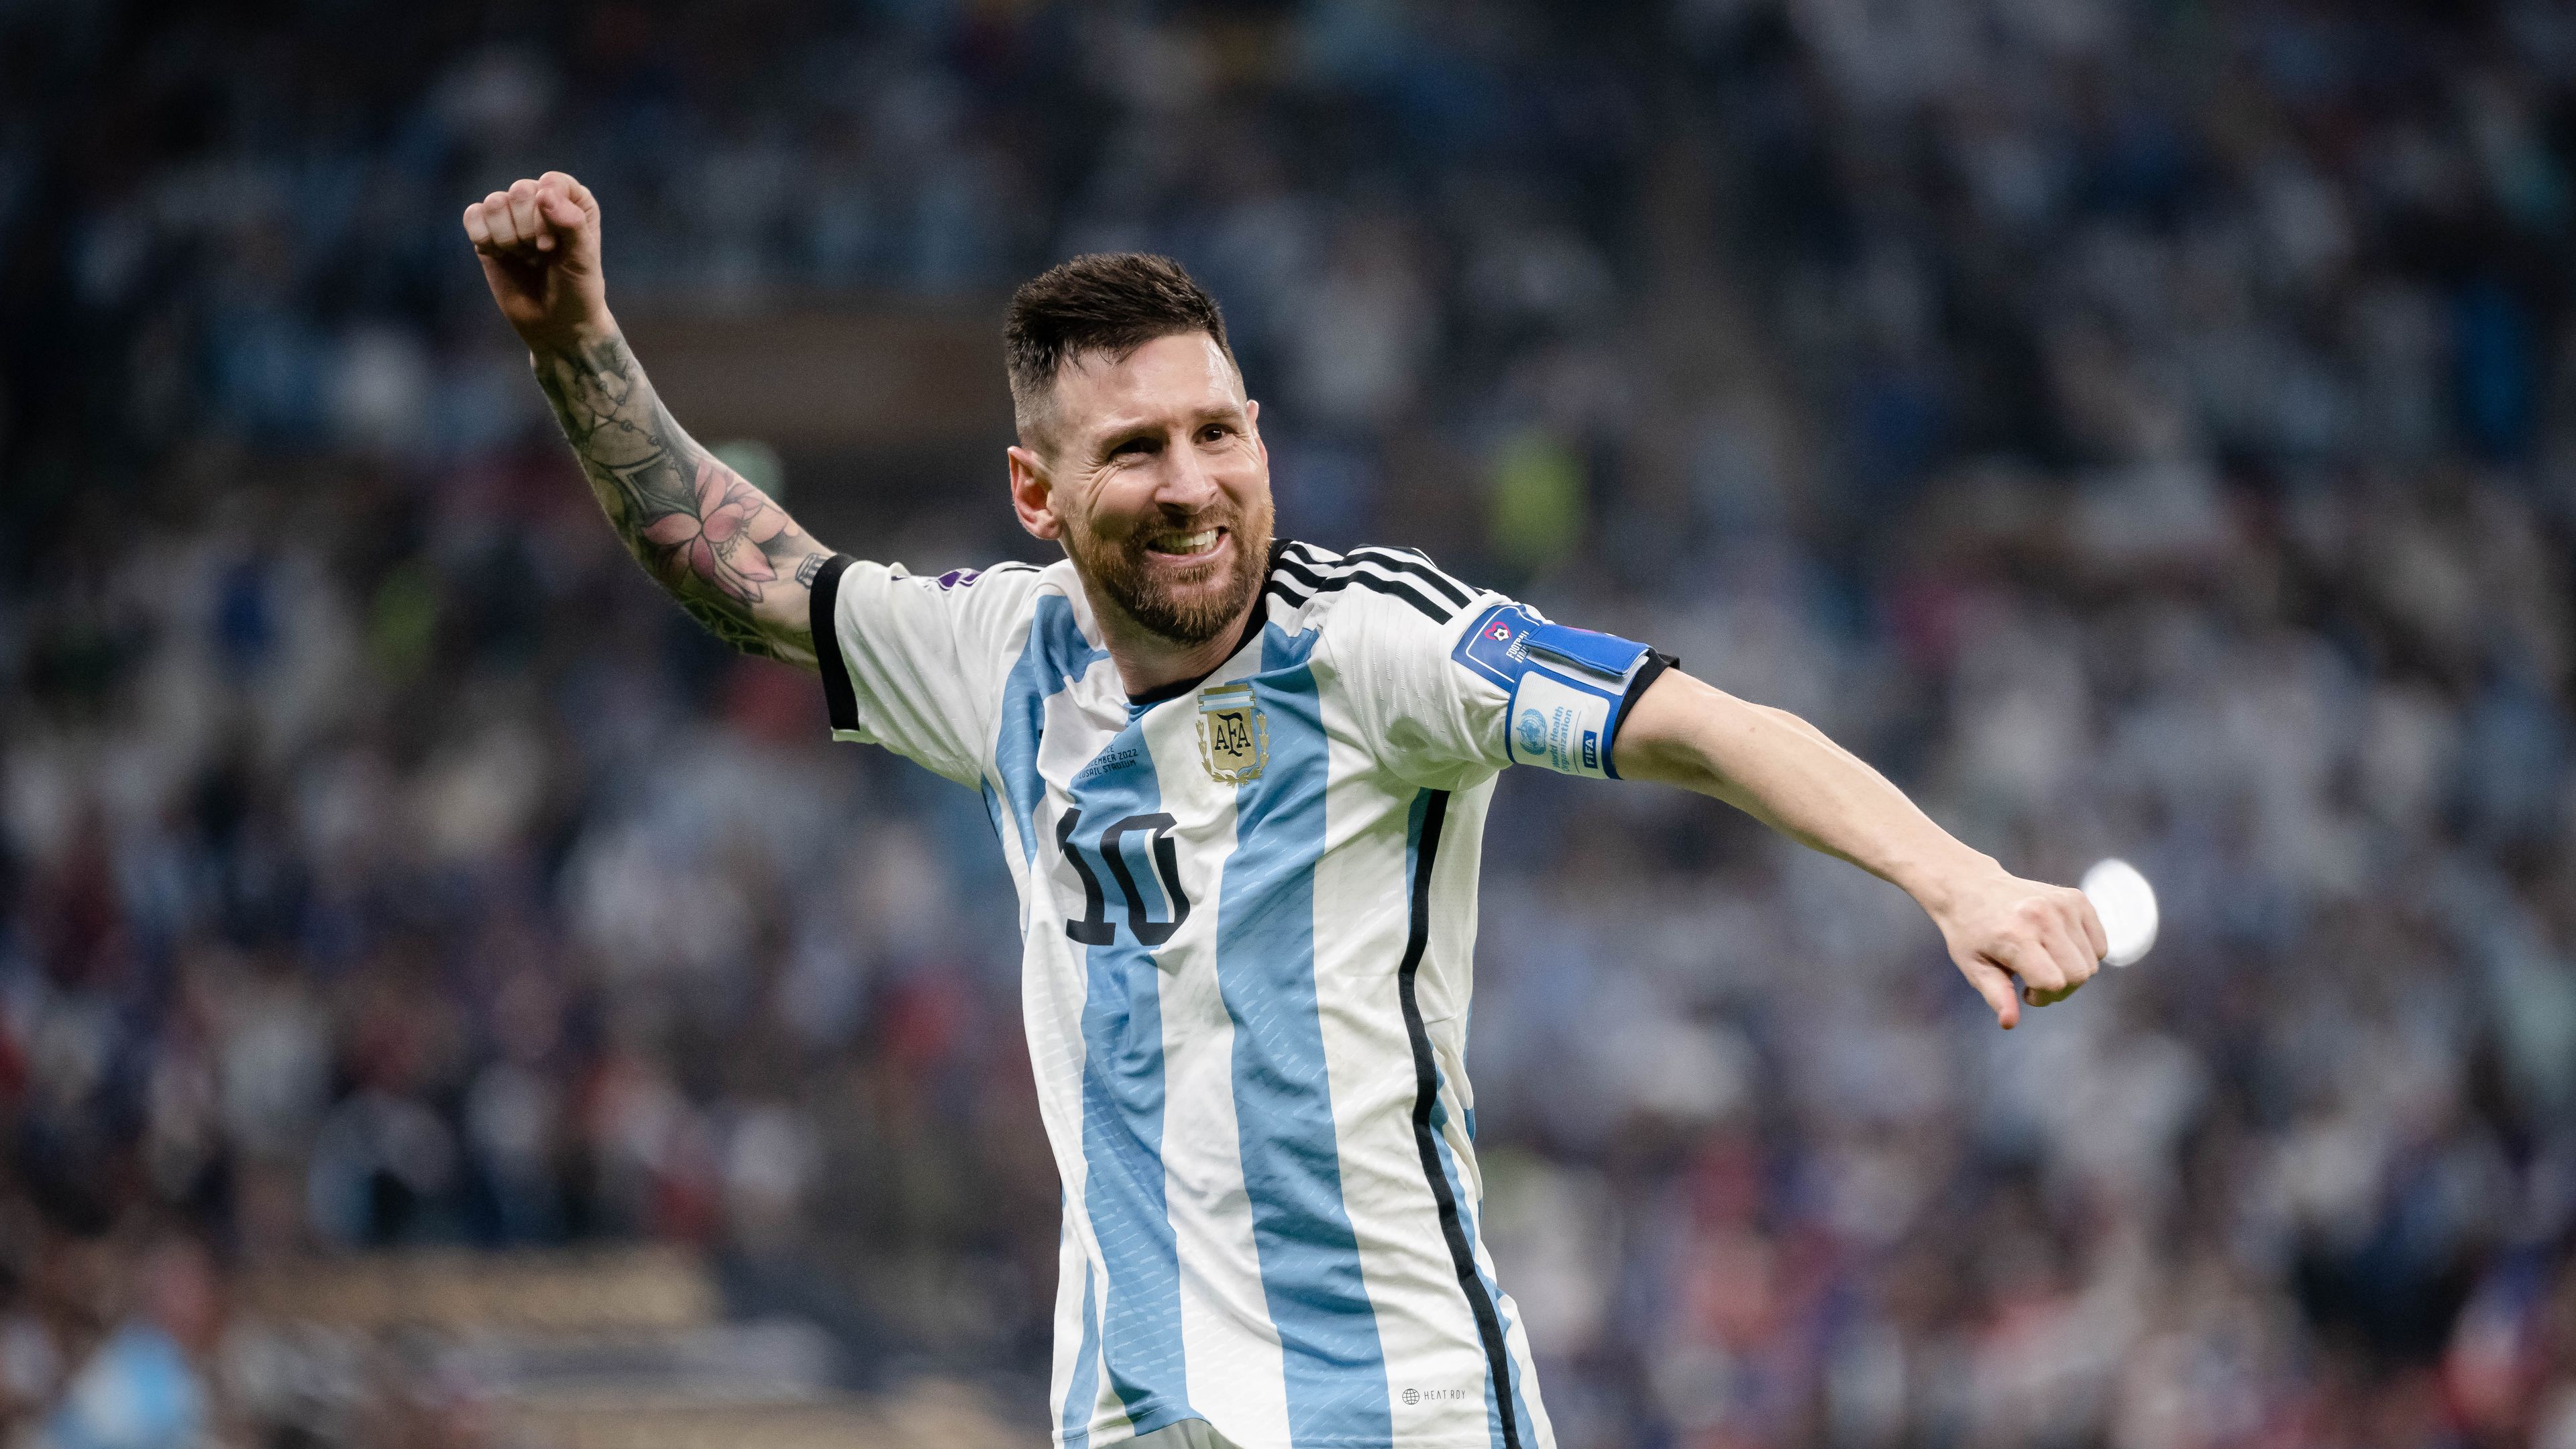 Hírösszefoglaló: Messi éjszakája és jövője, az argentinok ünnepe, Vialli állapota és a Liu testvérek jövője